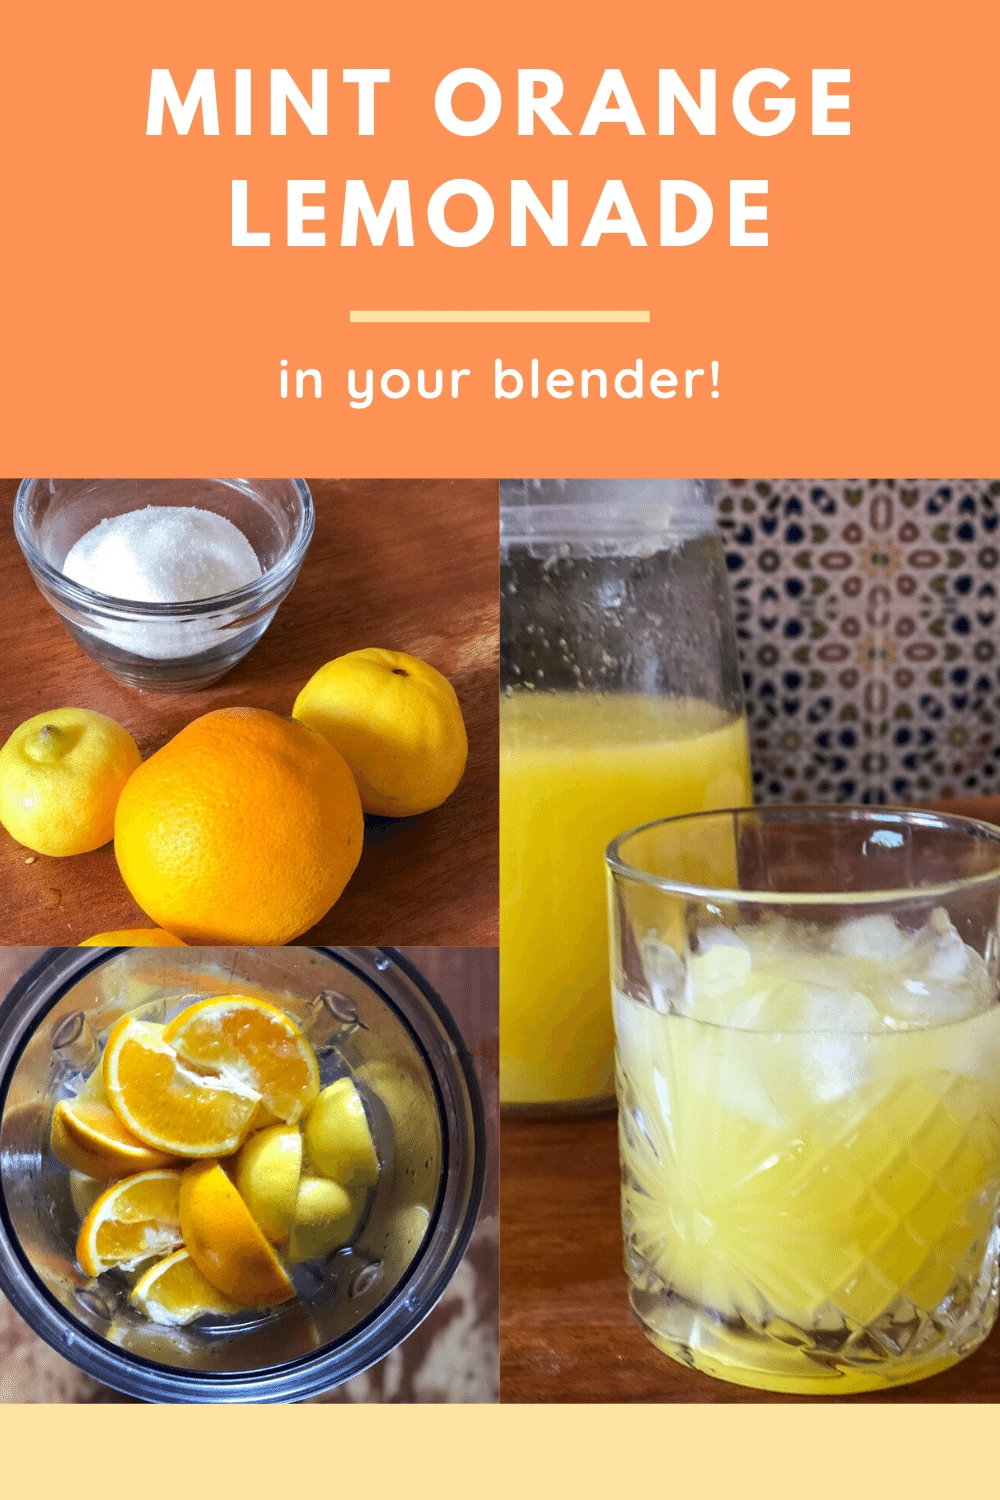 Mint orange lemonade made in the blender.